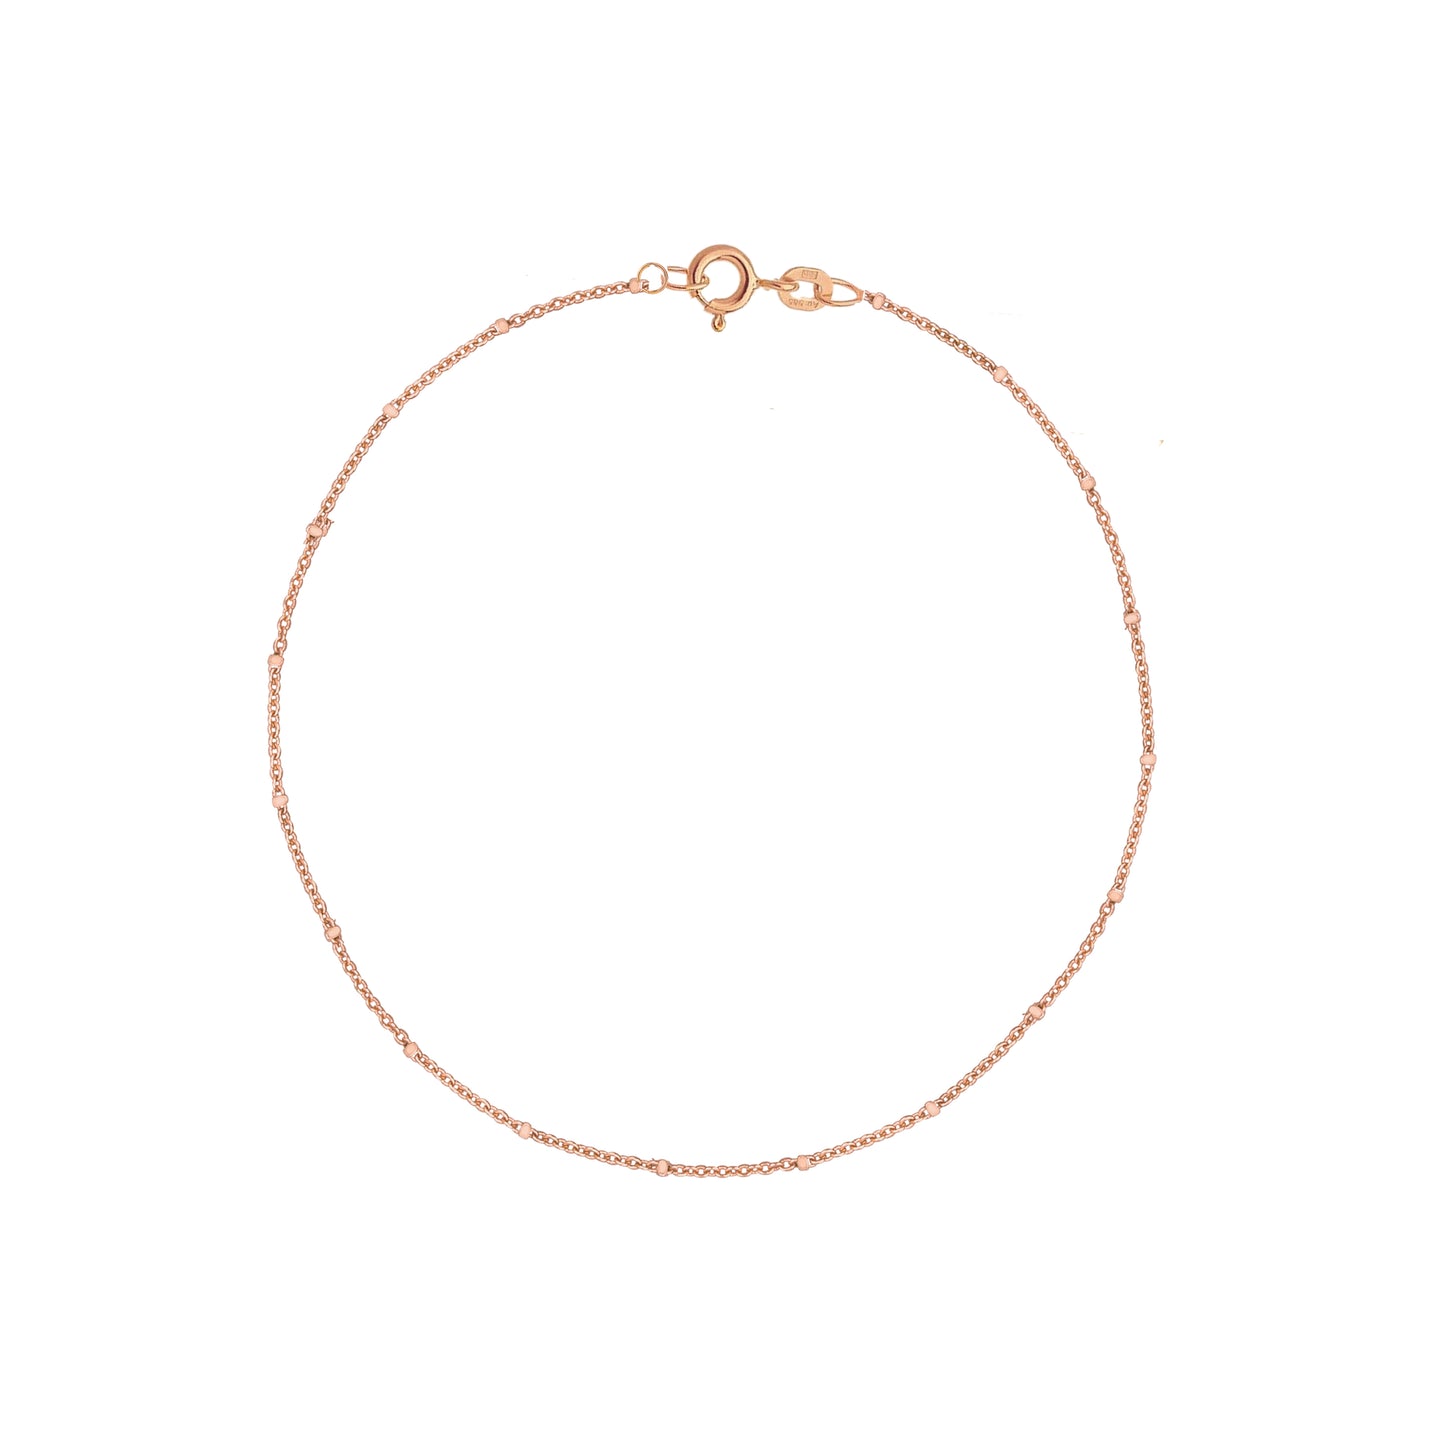 Satellite Chain Bracelet in Solid 9k Rose Gold